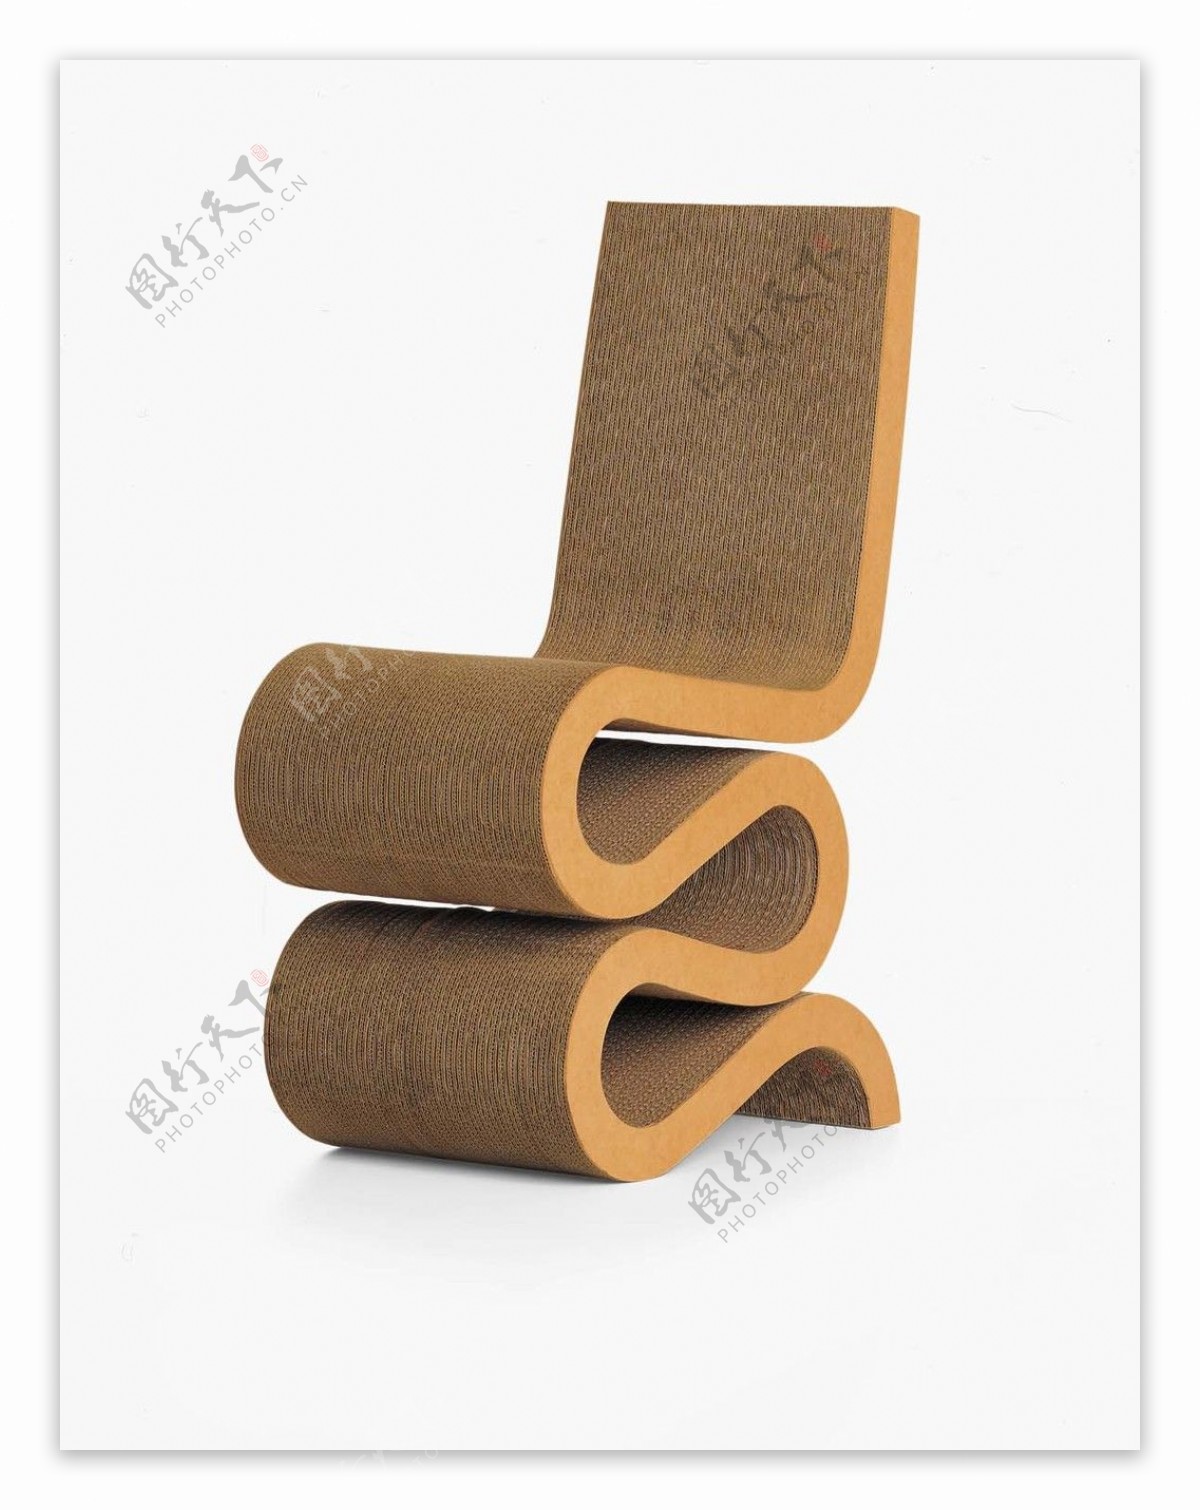 现代时尚创意简约木质椅子3d模型